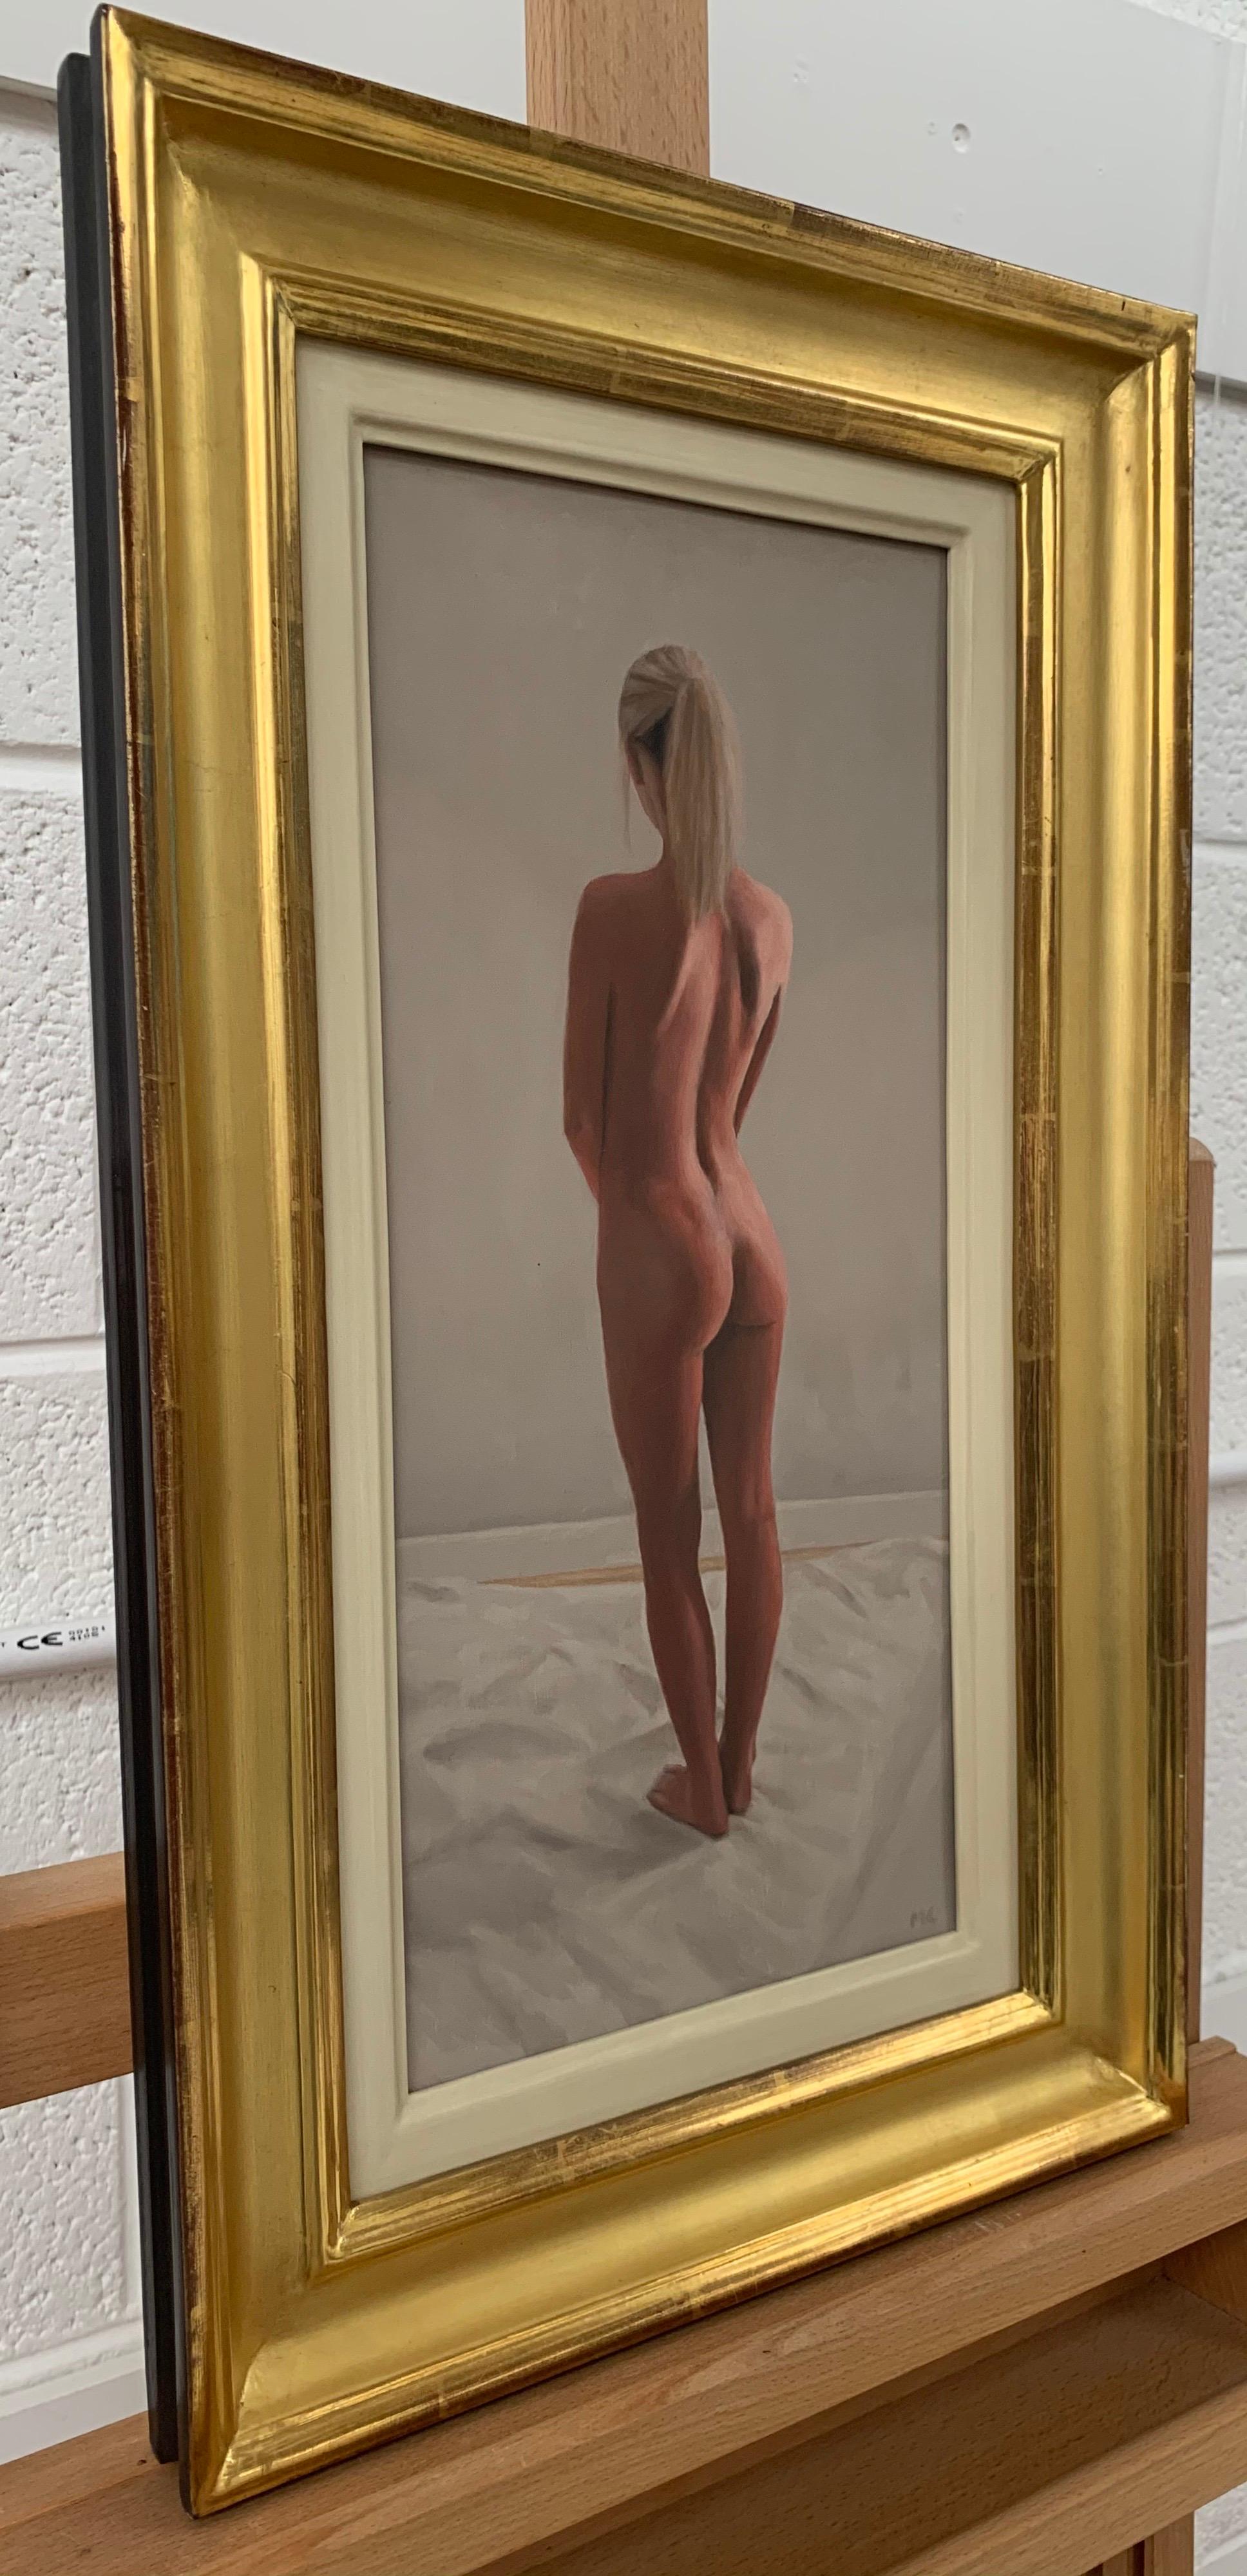 Ölgemälde eines stehenden weiblichen Aktes von einem zeitgenössischen britischen Künstler – Painting von Mark Clark